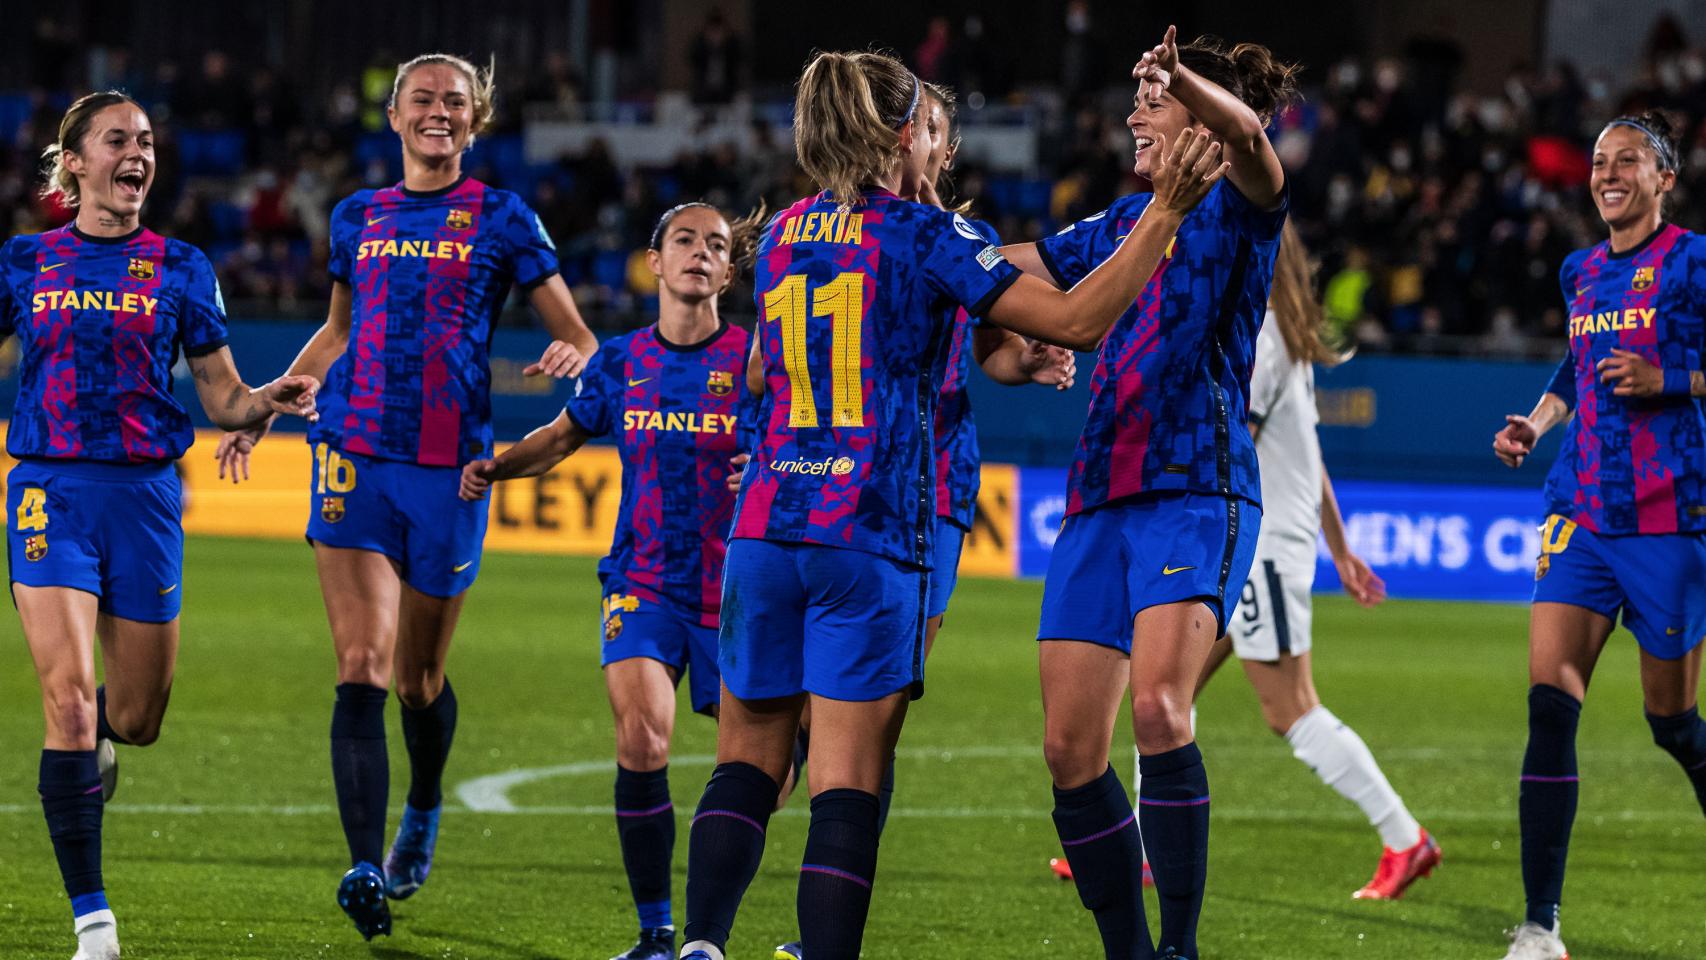 Jugadores de fútbol club barcelona femenino